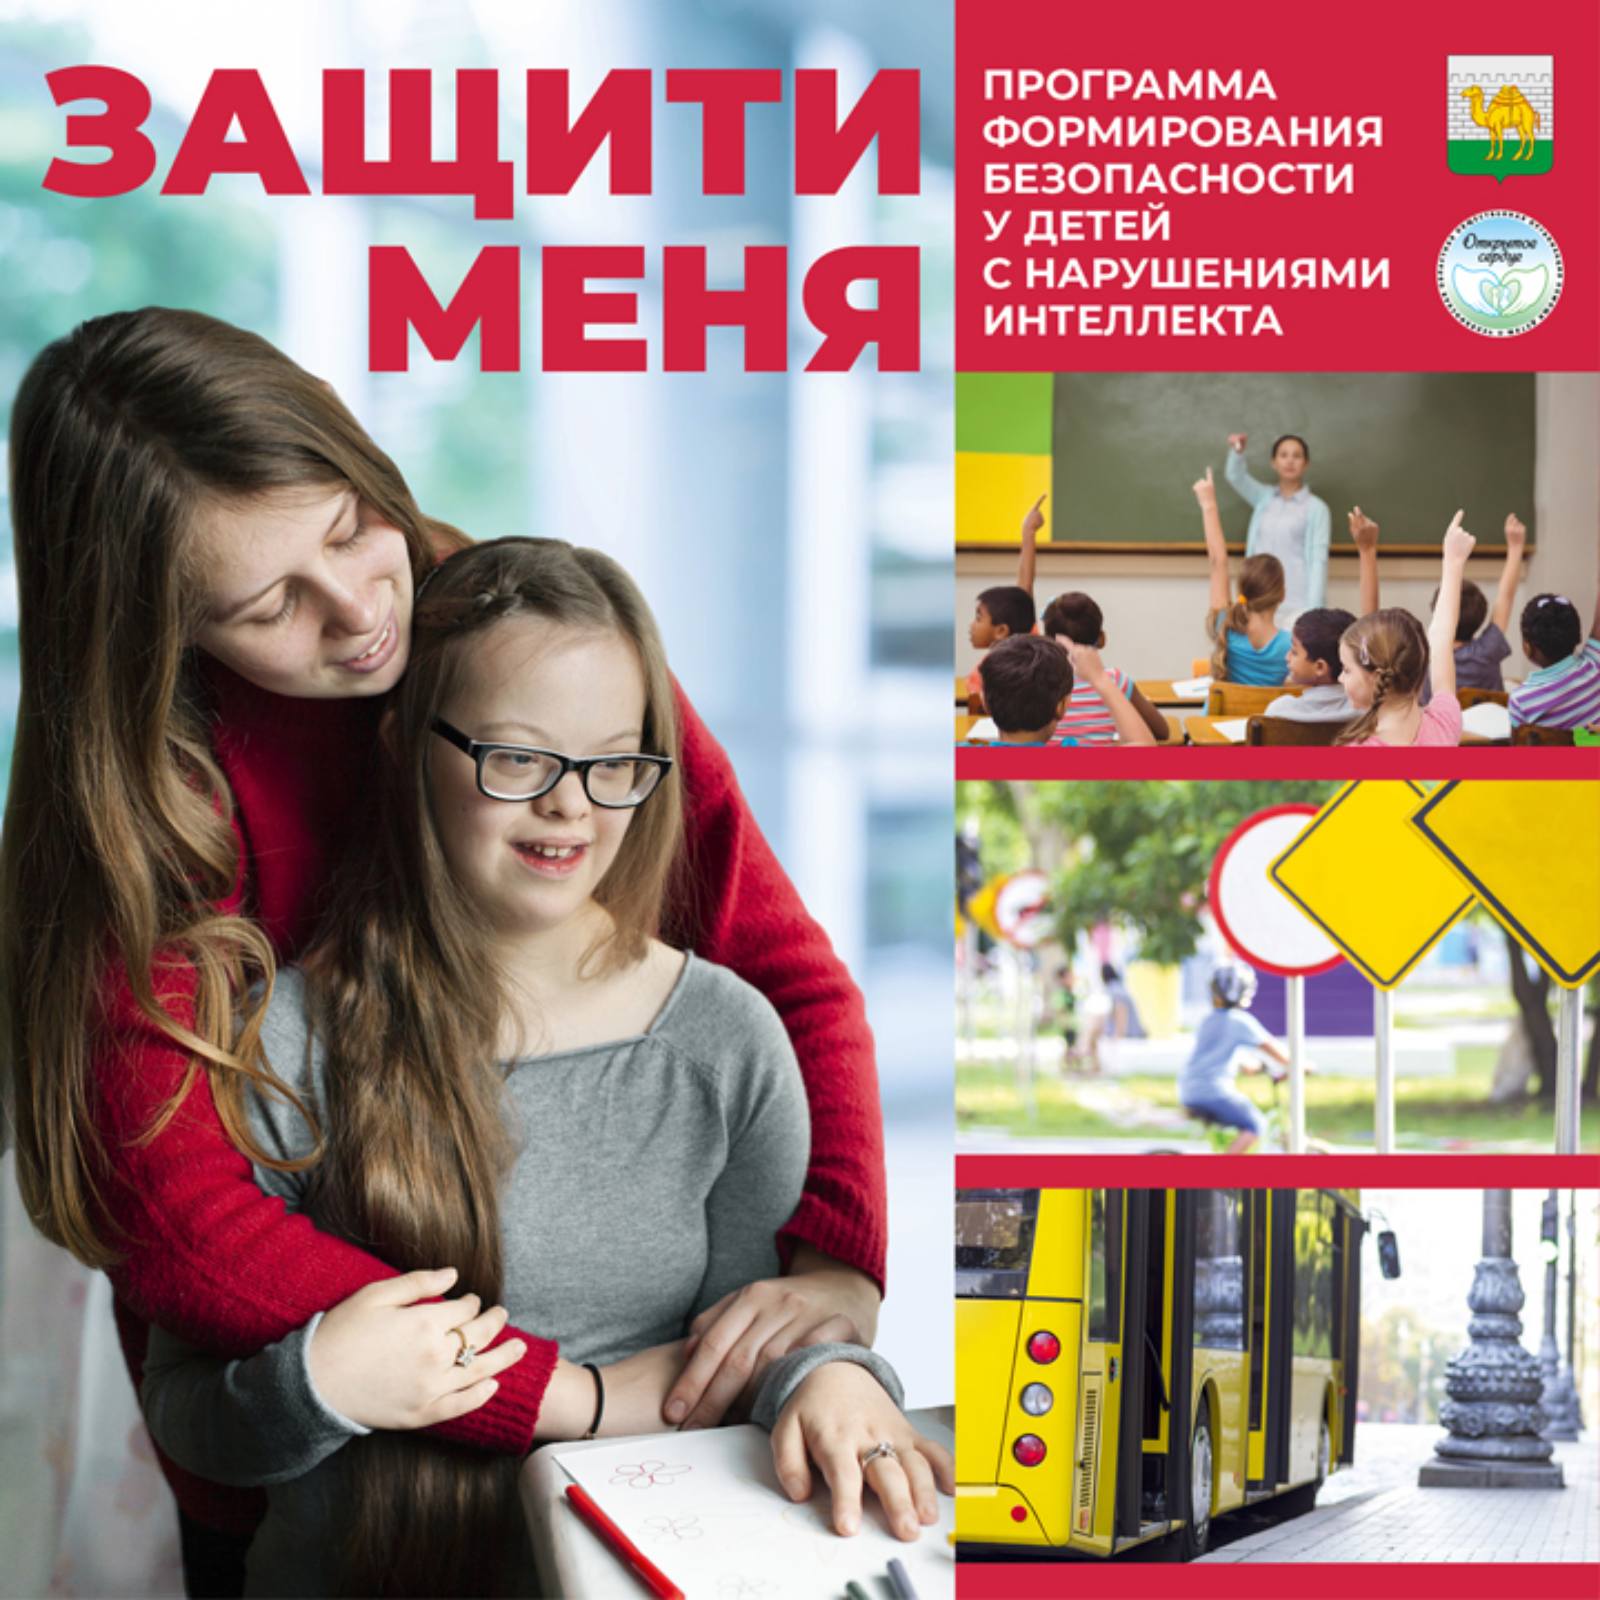 В школах Челябинска запустят проект «Защити меня»